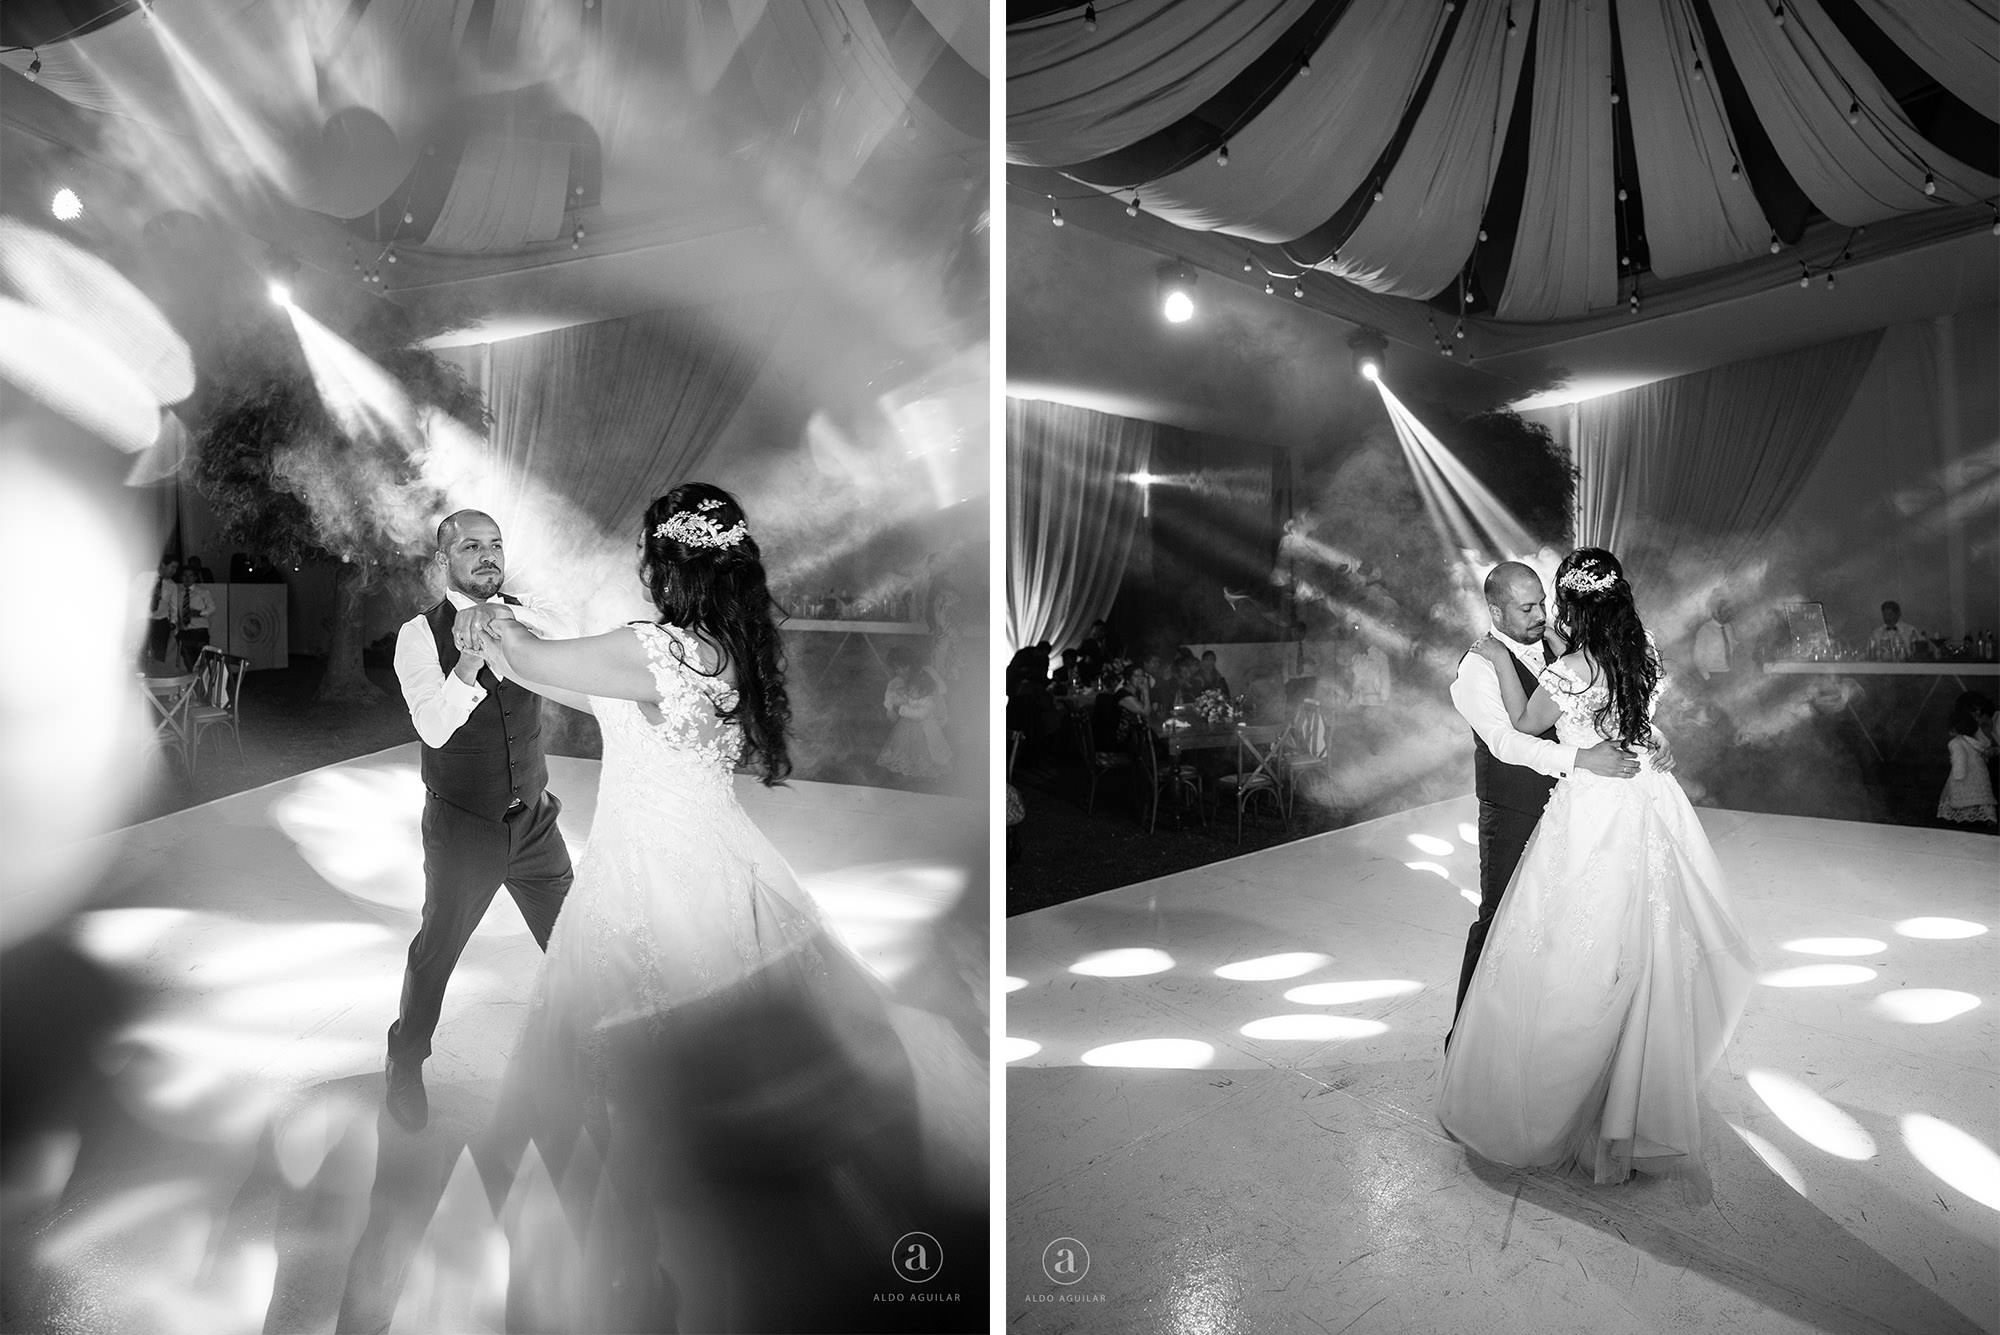 Claudia Roberto aldo aguilar fotografo fotografia boda sesion novios retrato novia novio arequipa peru 24 lafont fiesta baile